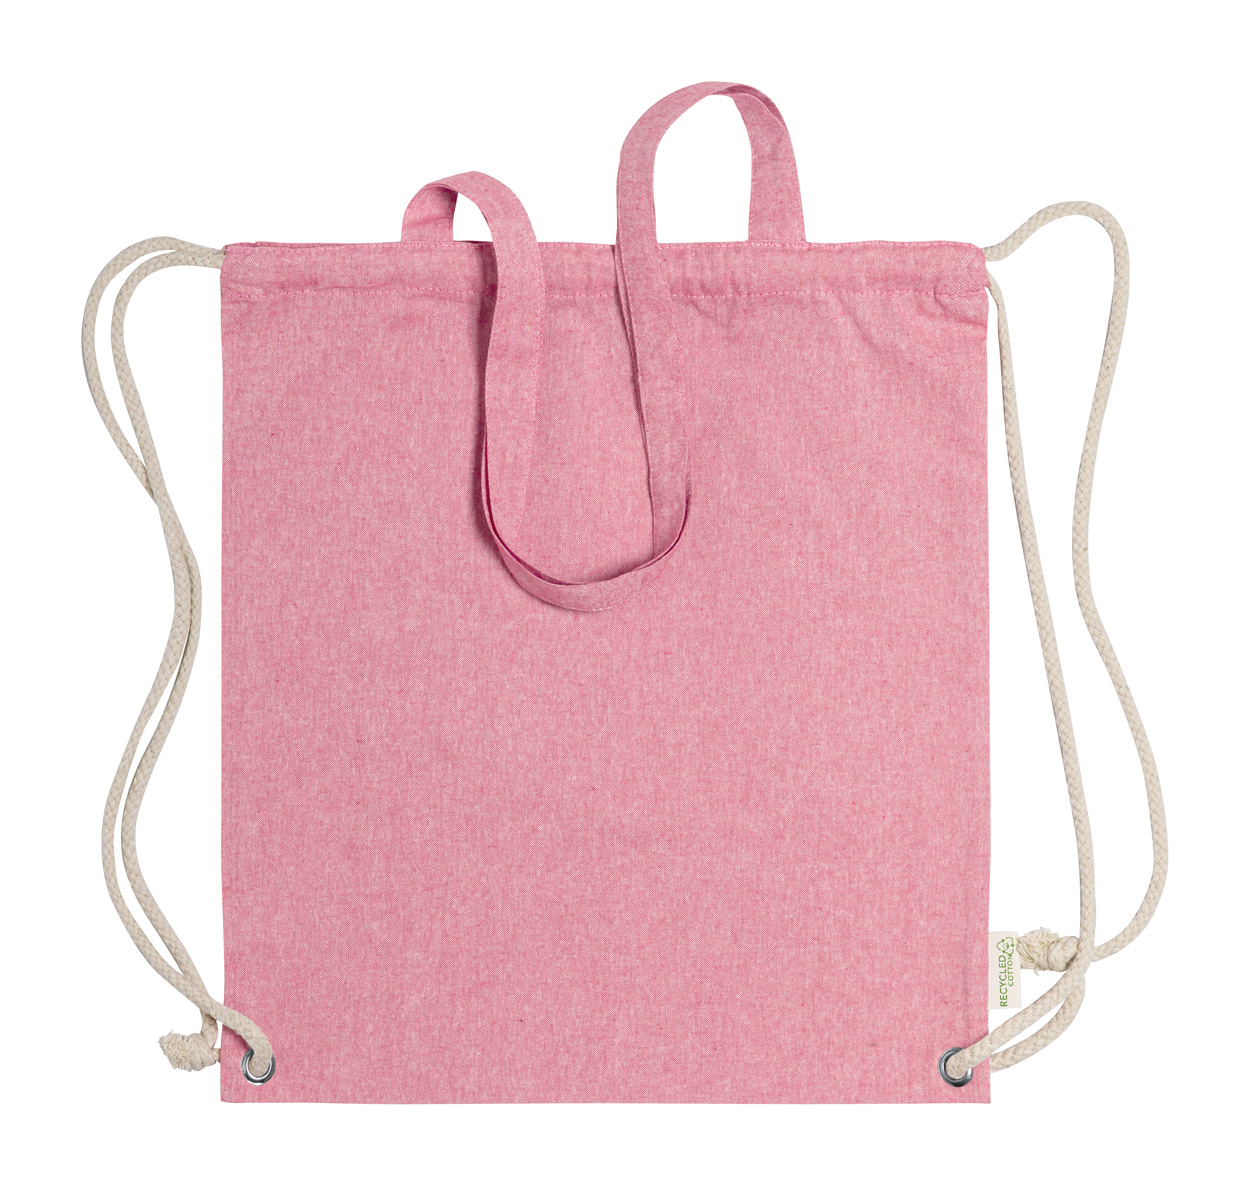 Fenin drawstring bag - pink